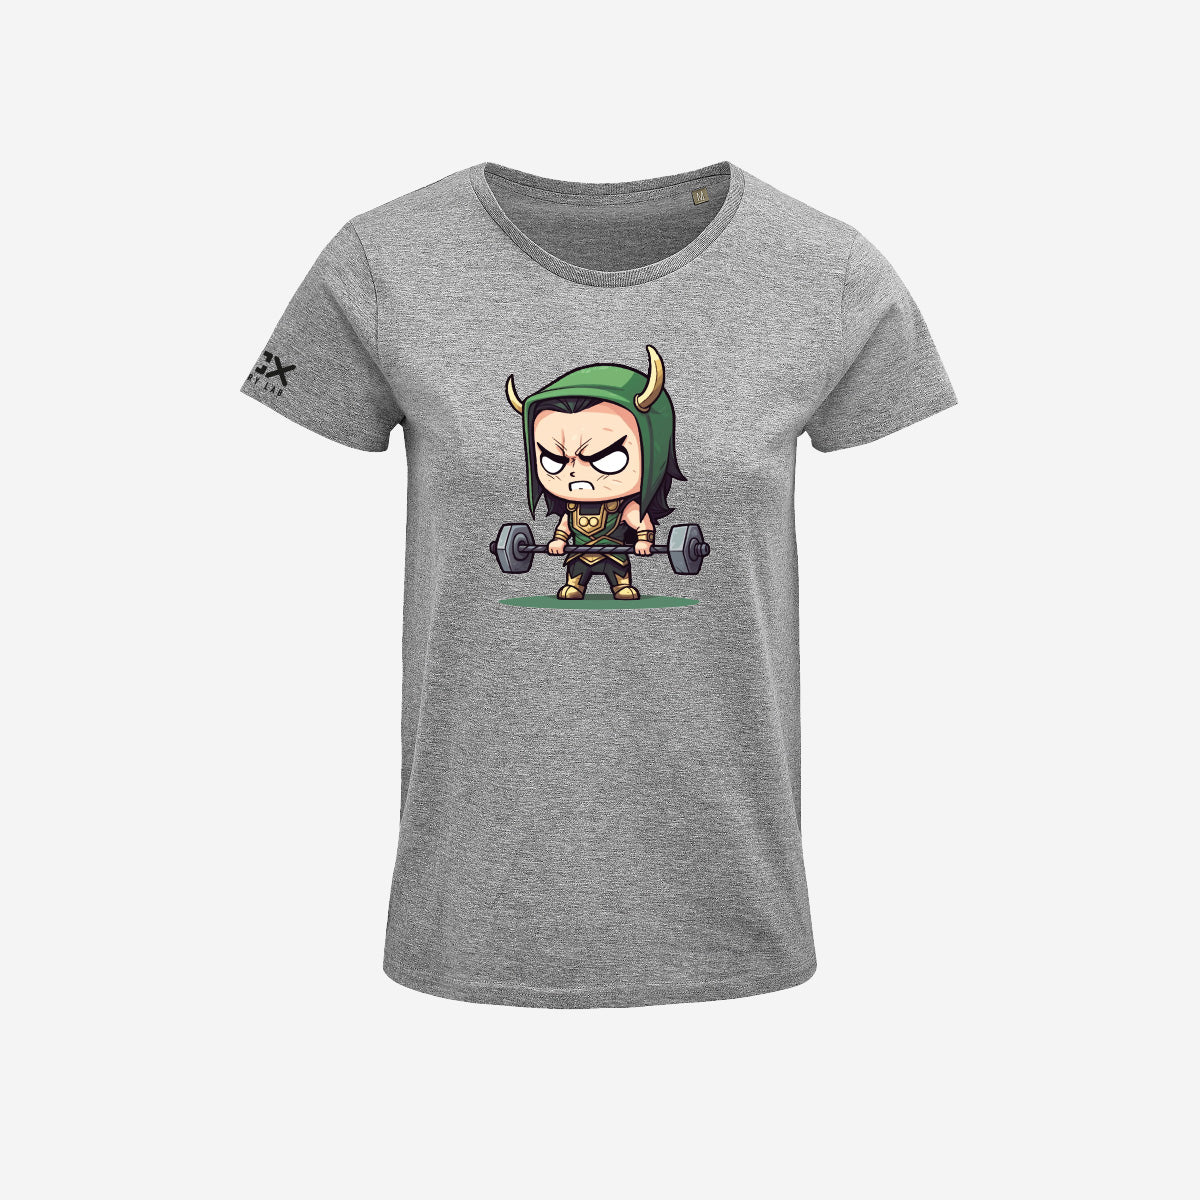 T-shirt Donna - Loki